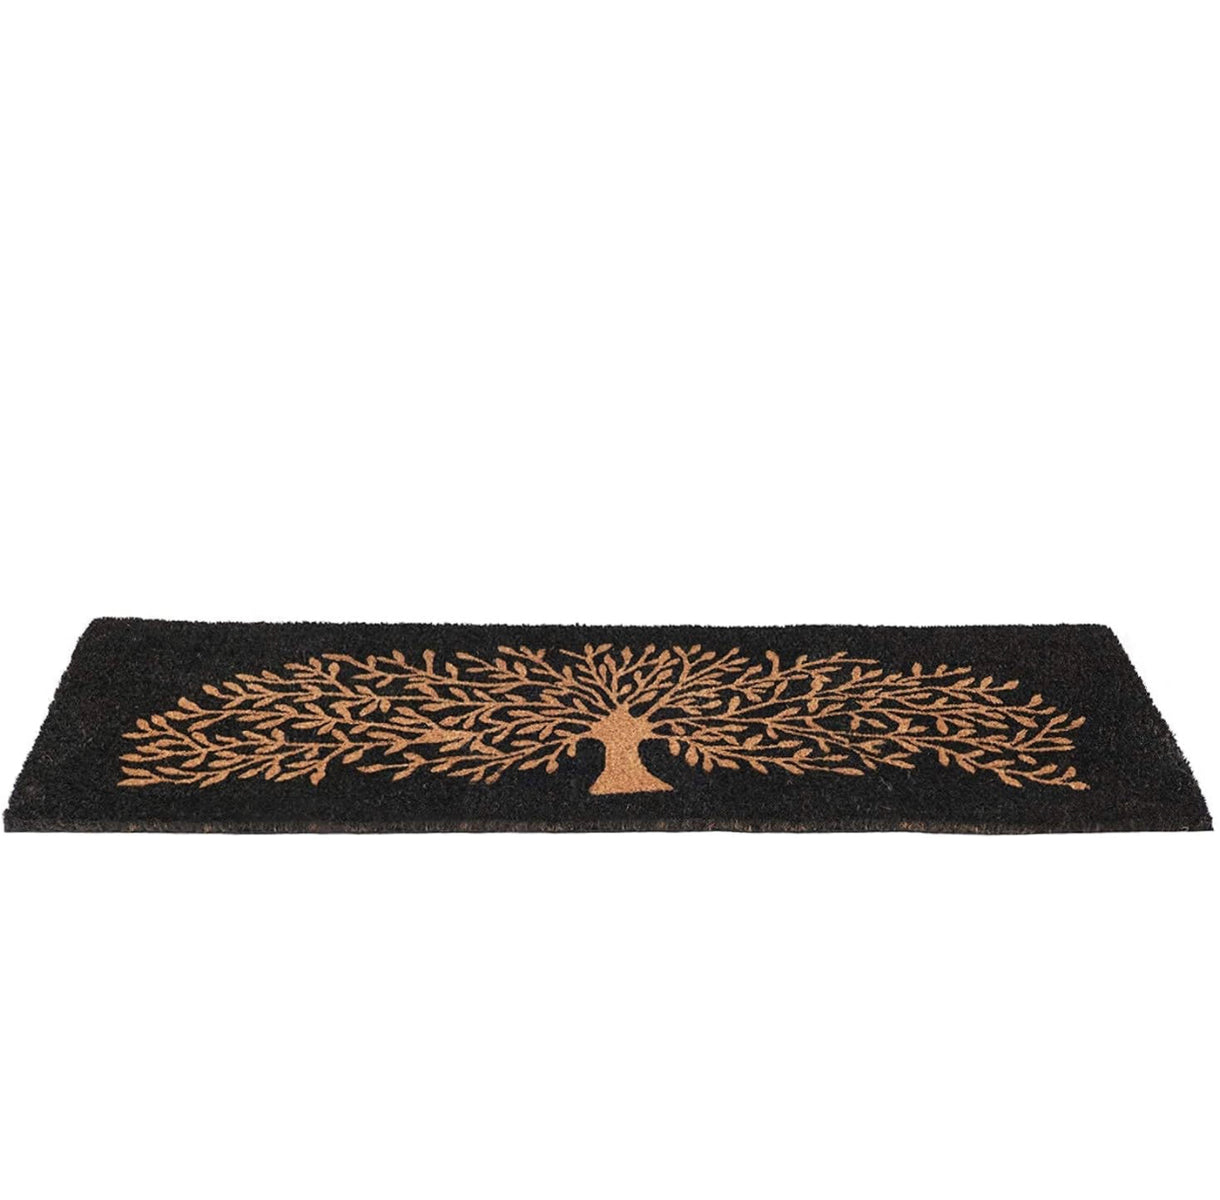 OnlyMat Black and Brown Long Tree Design Coir Floor Mat